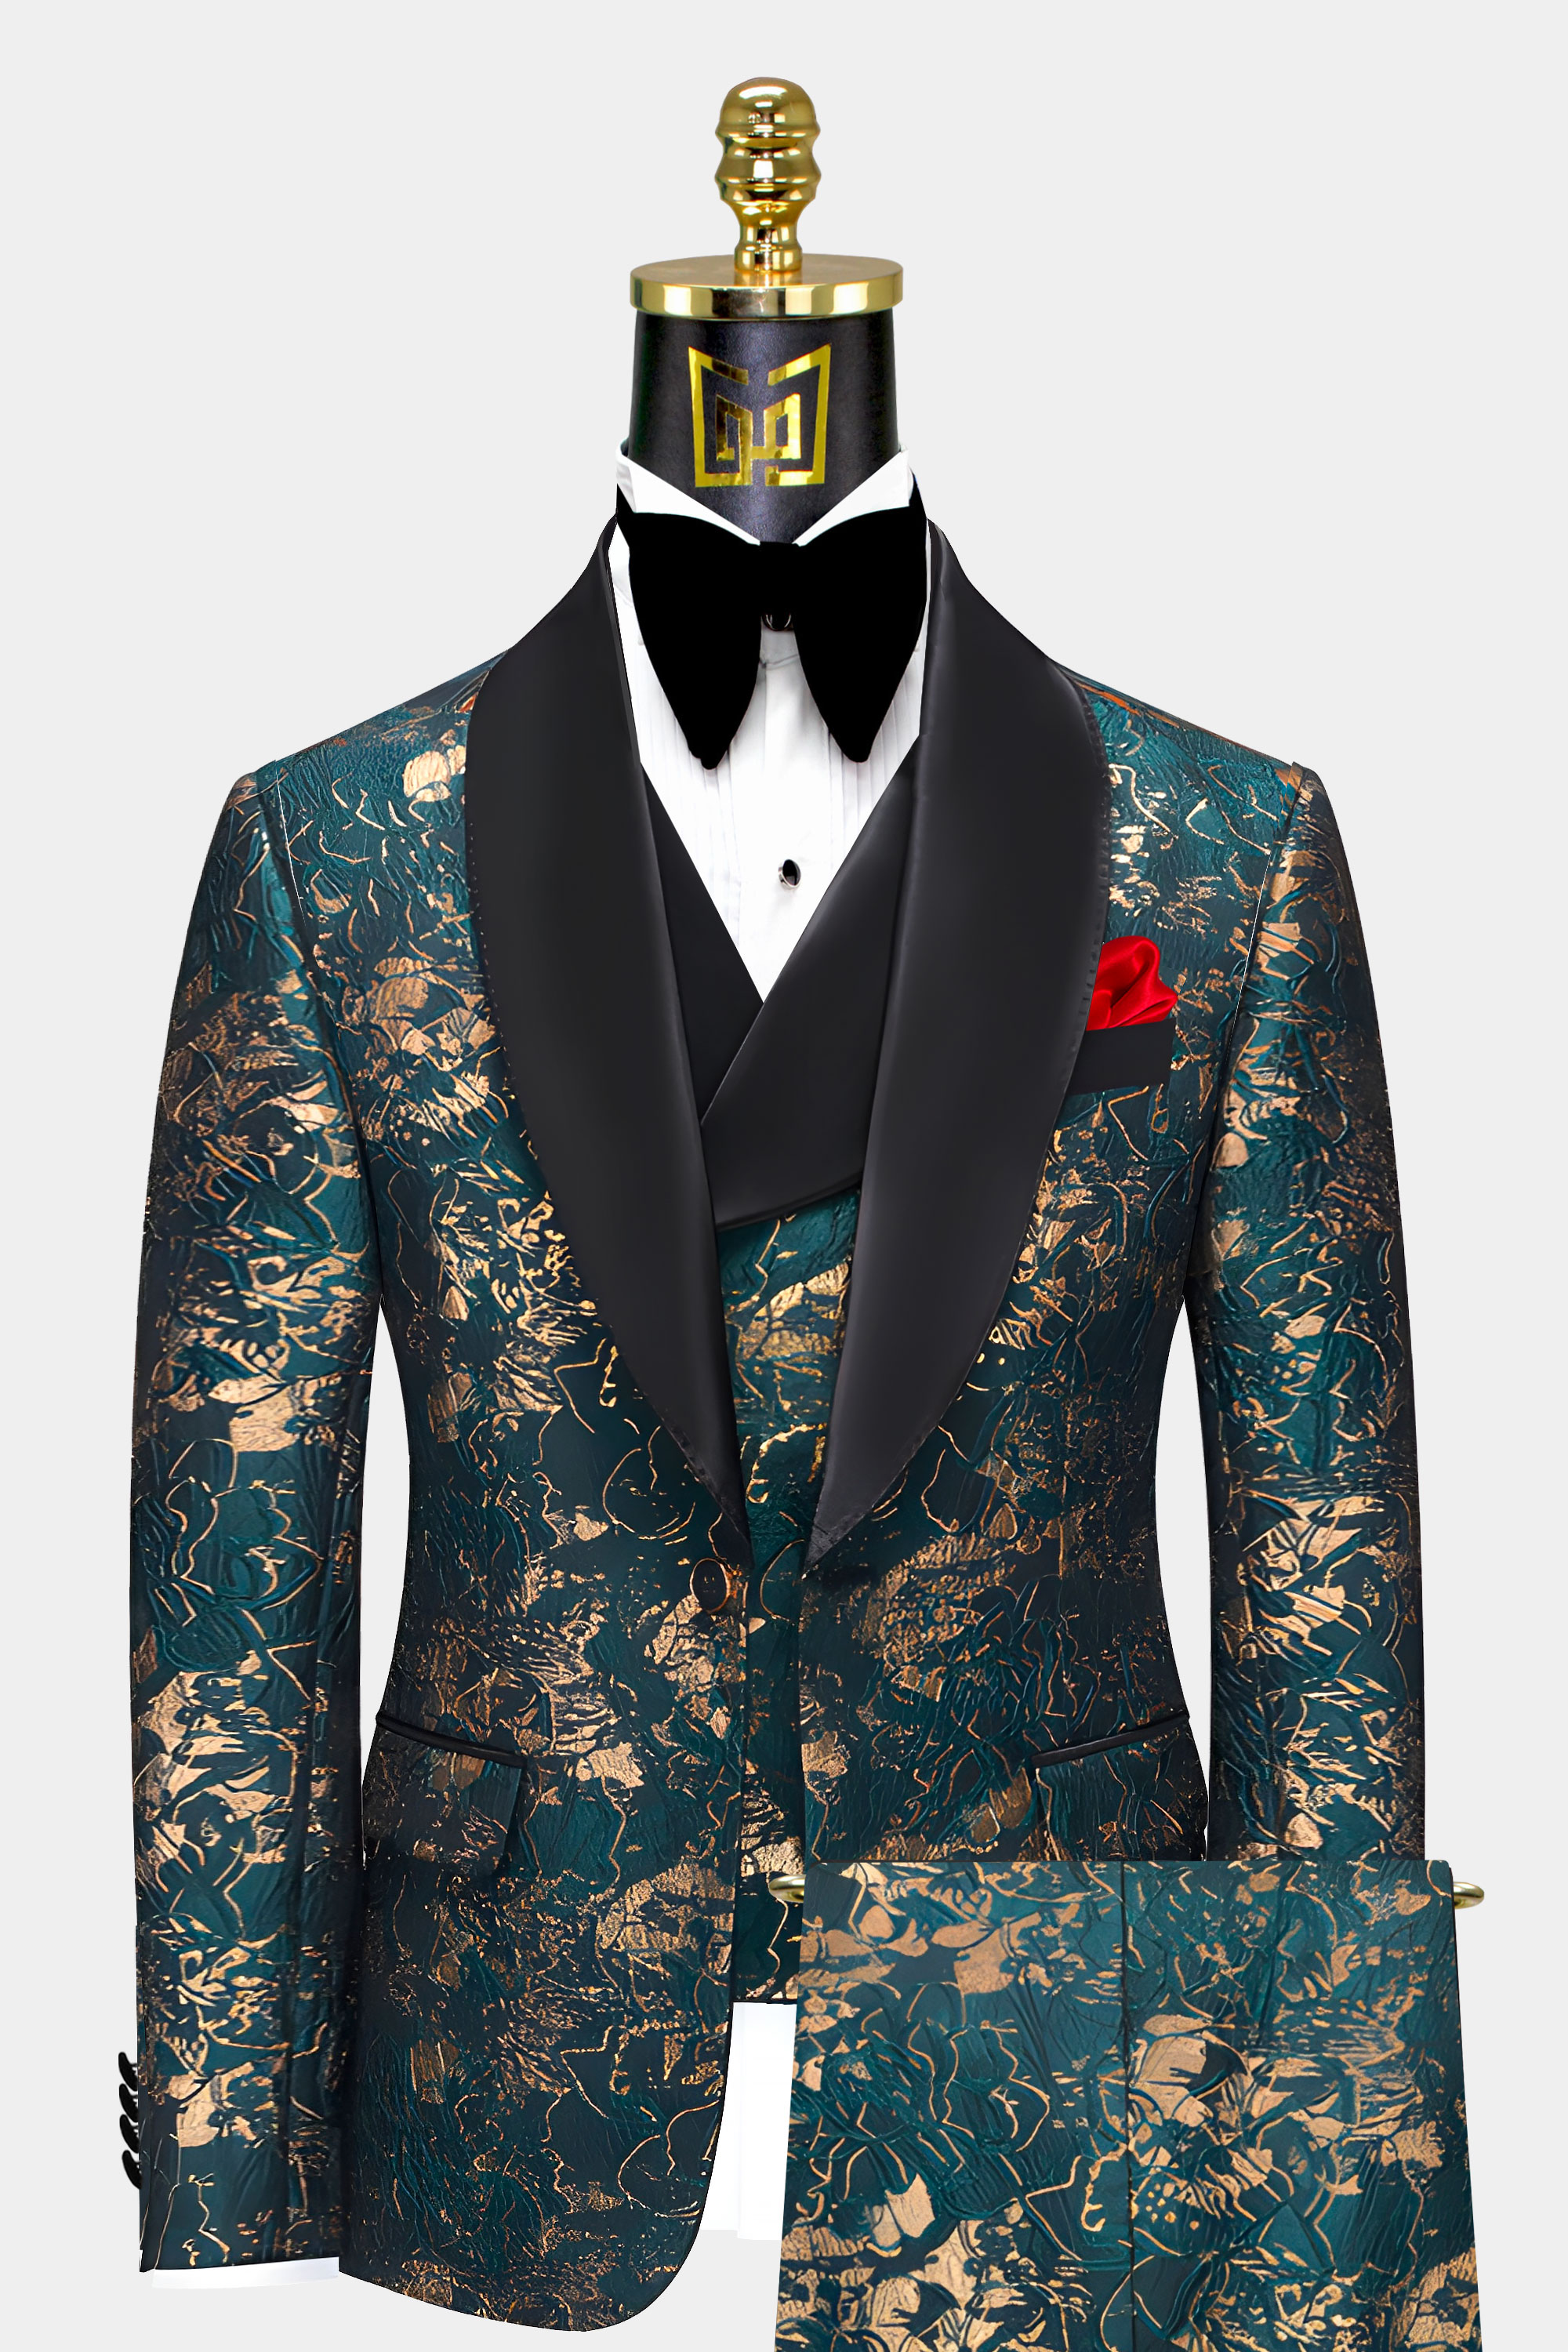 Mens-Teal-and-Gold-Tuxedo-Prom-Groom-Wedding-Suit-from-Gentlemansguru.com